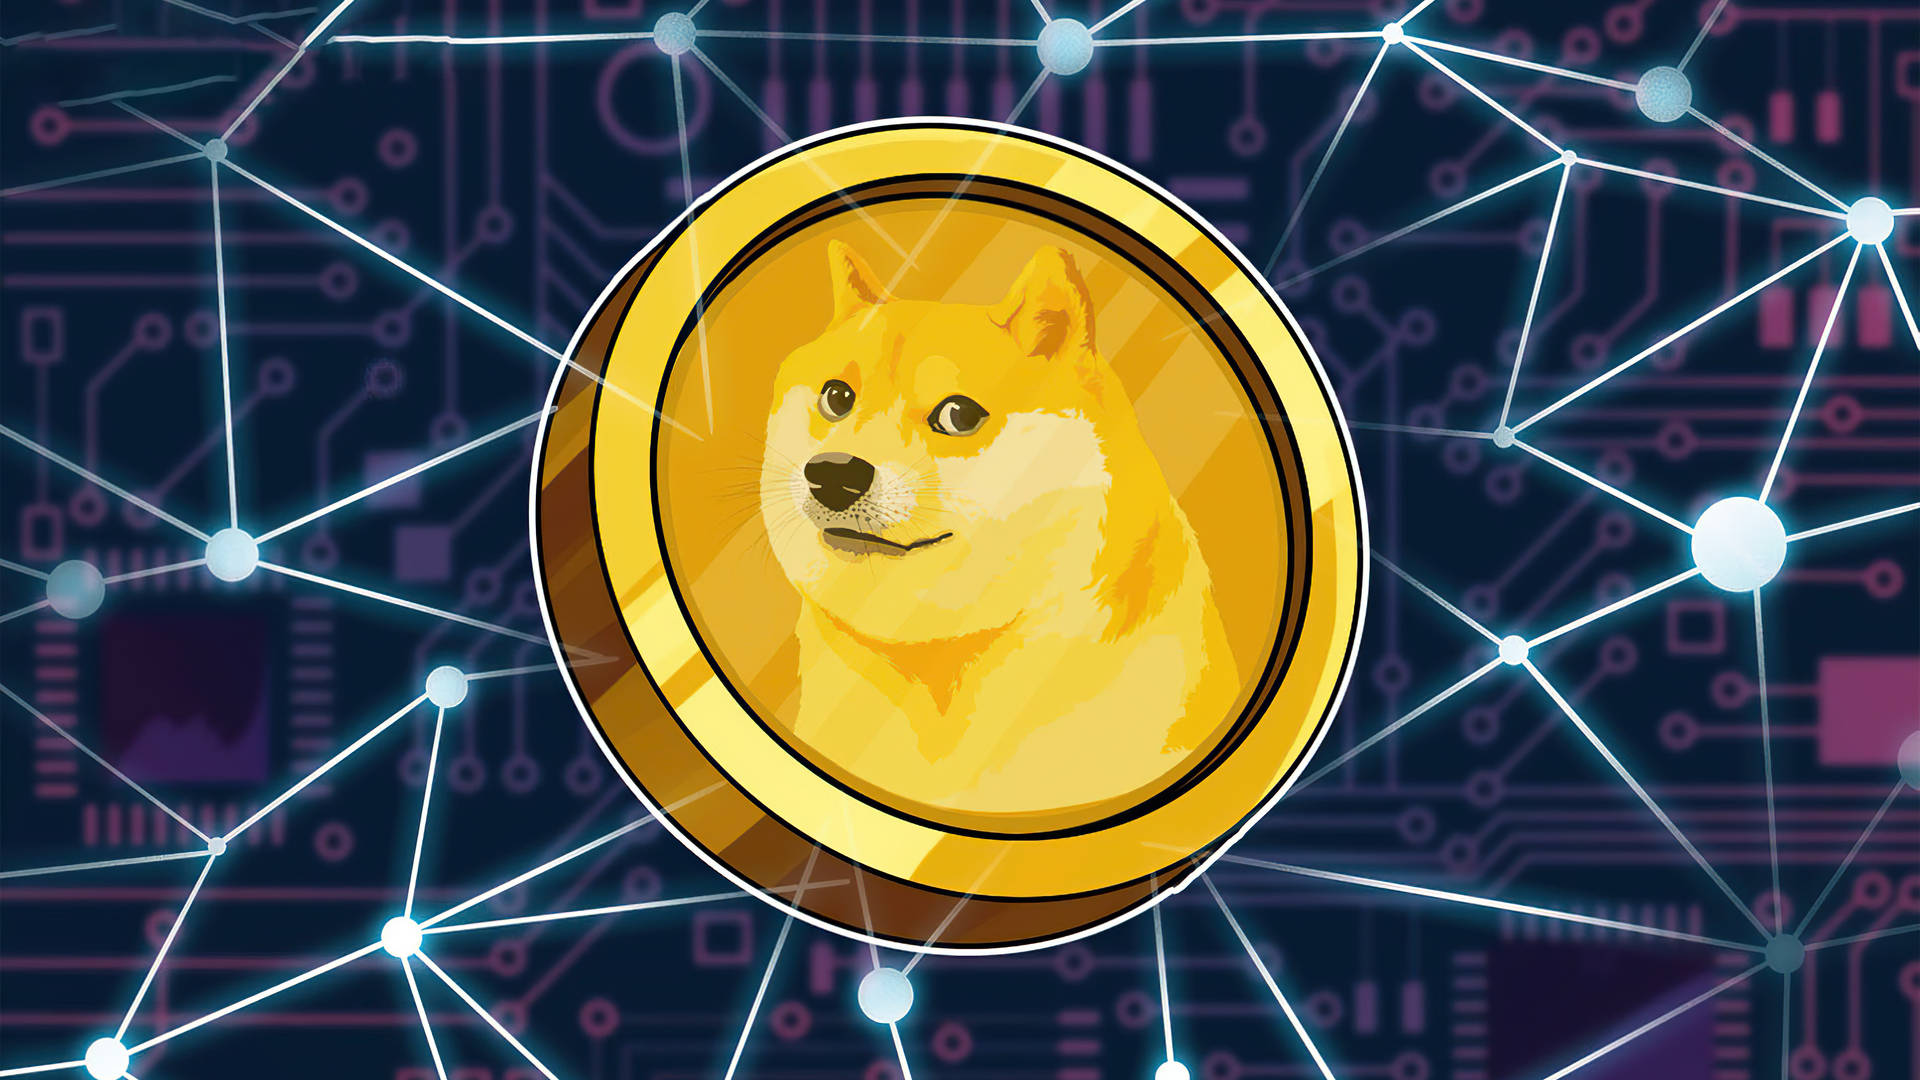 Dogecoin Digital Artwork Background